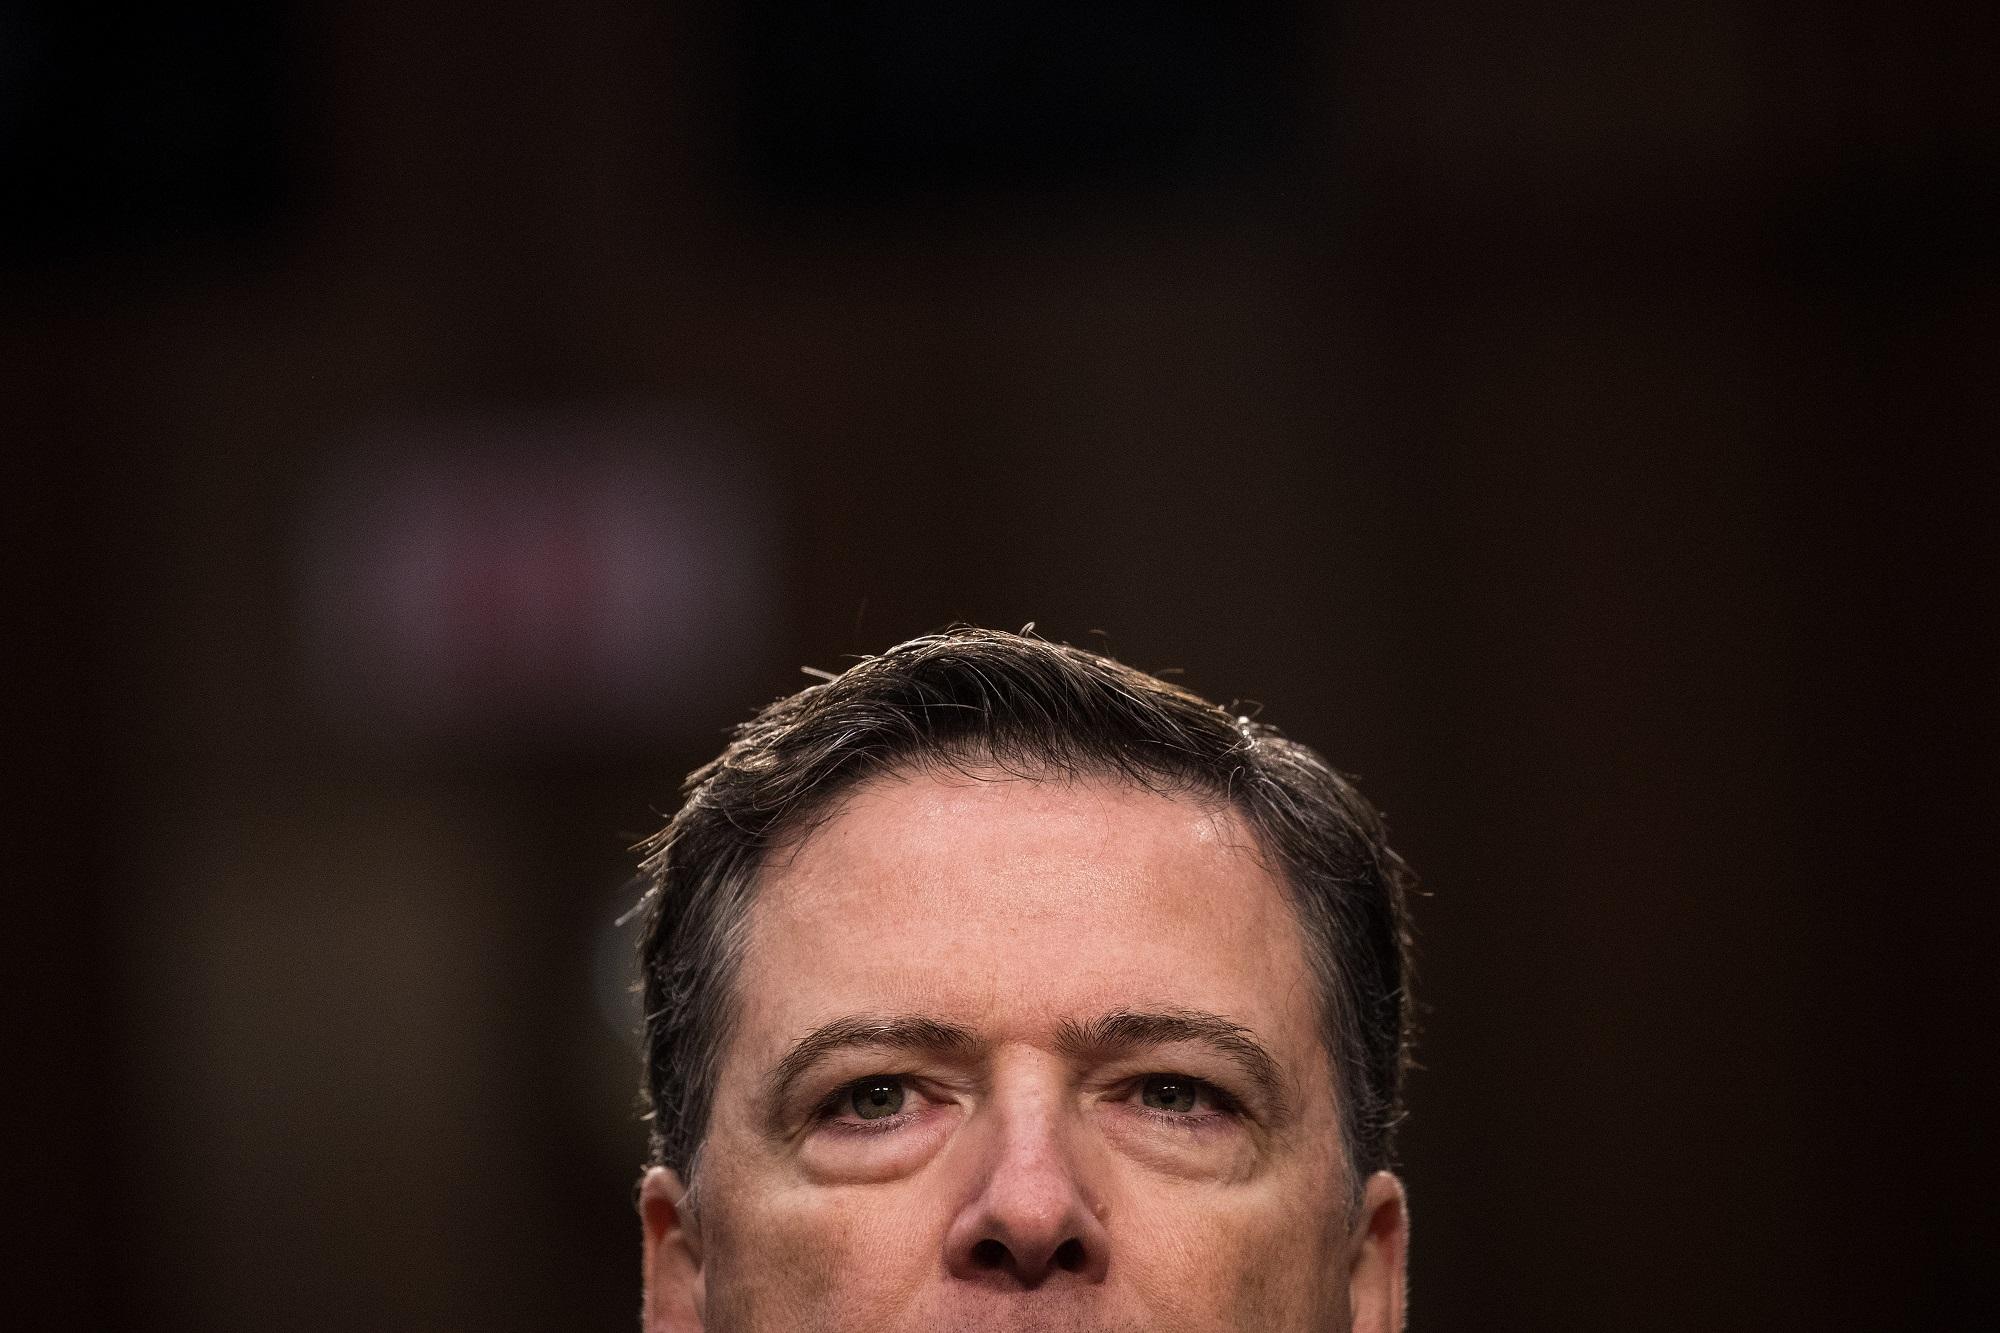 James Comey, exdirector del FBI, captado durante su testificación en el Senado estadounidense. Foto Drew Angerer (AFP).